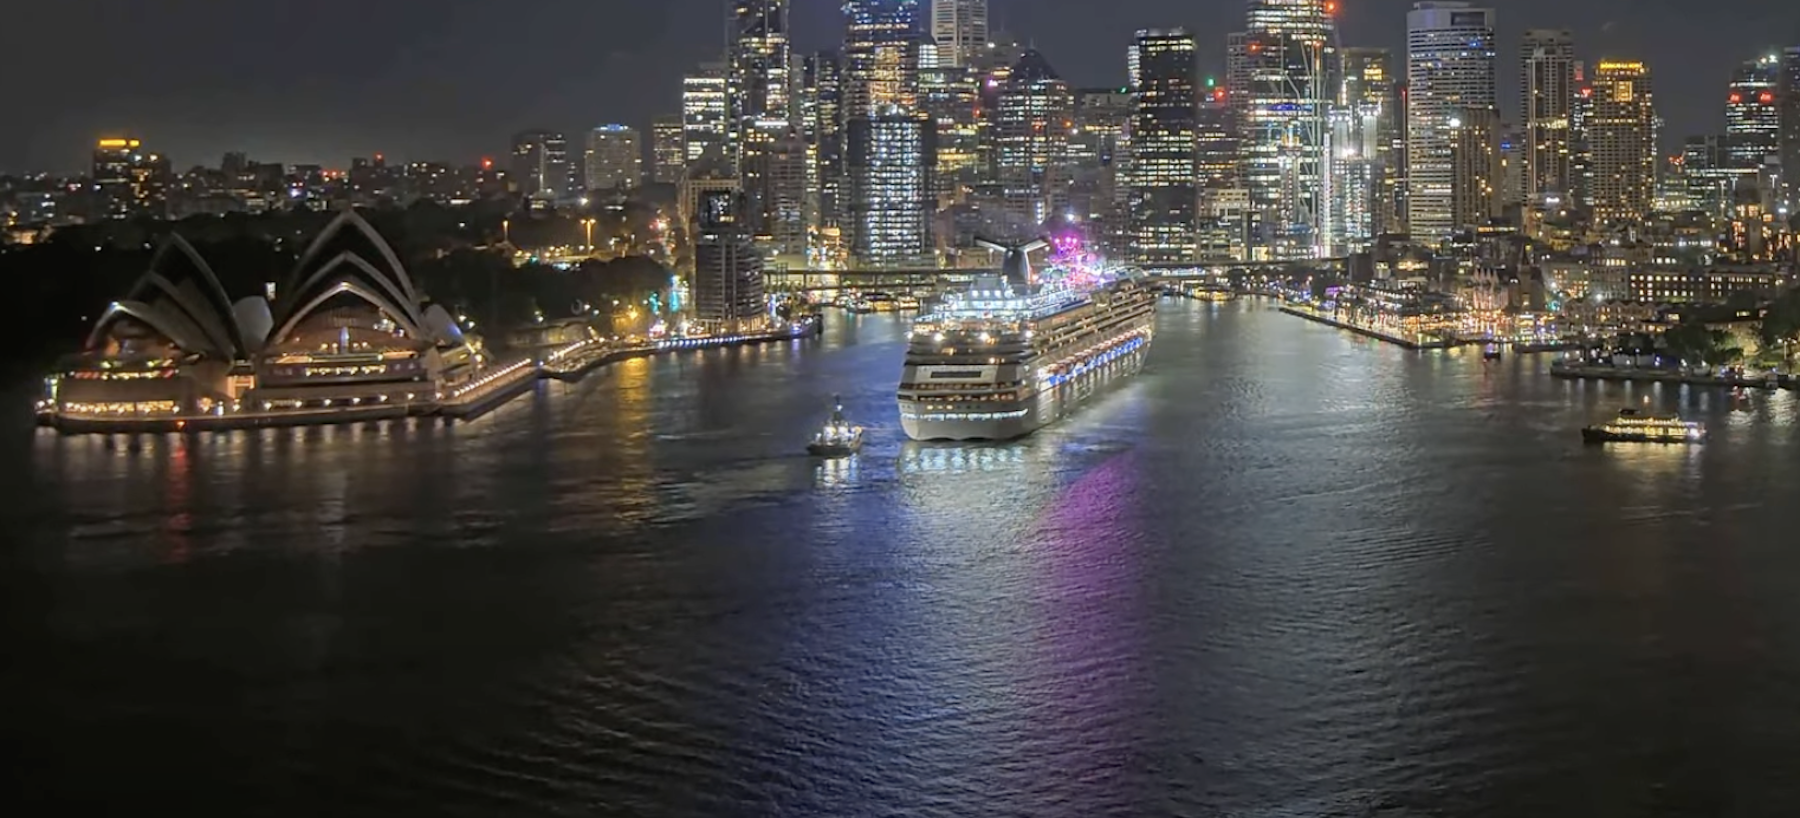 Carnival Splendor arrives in Sydney Harbour